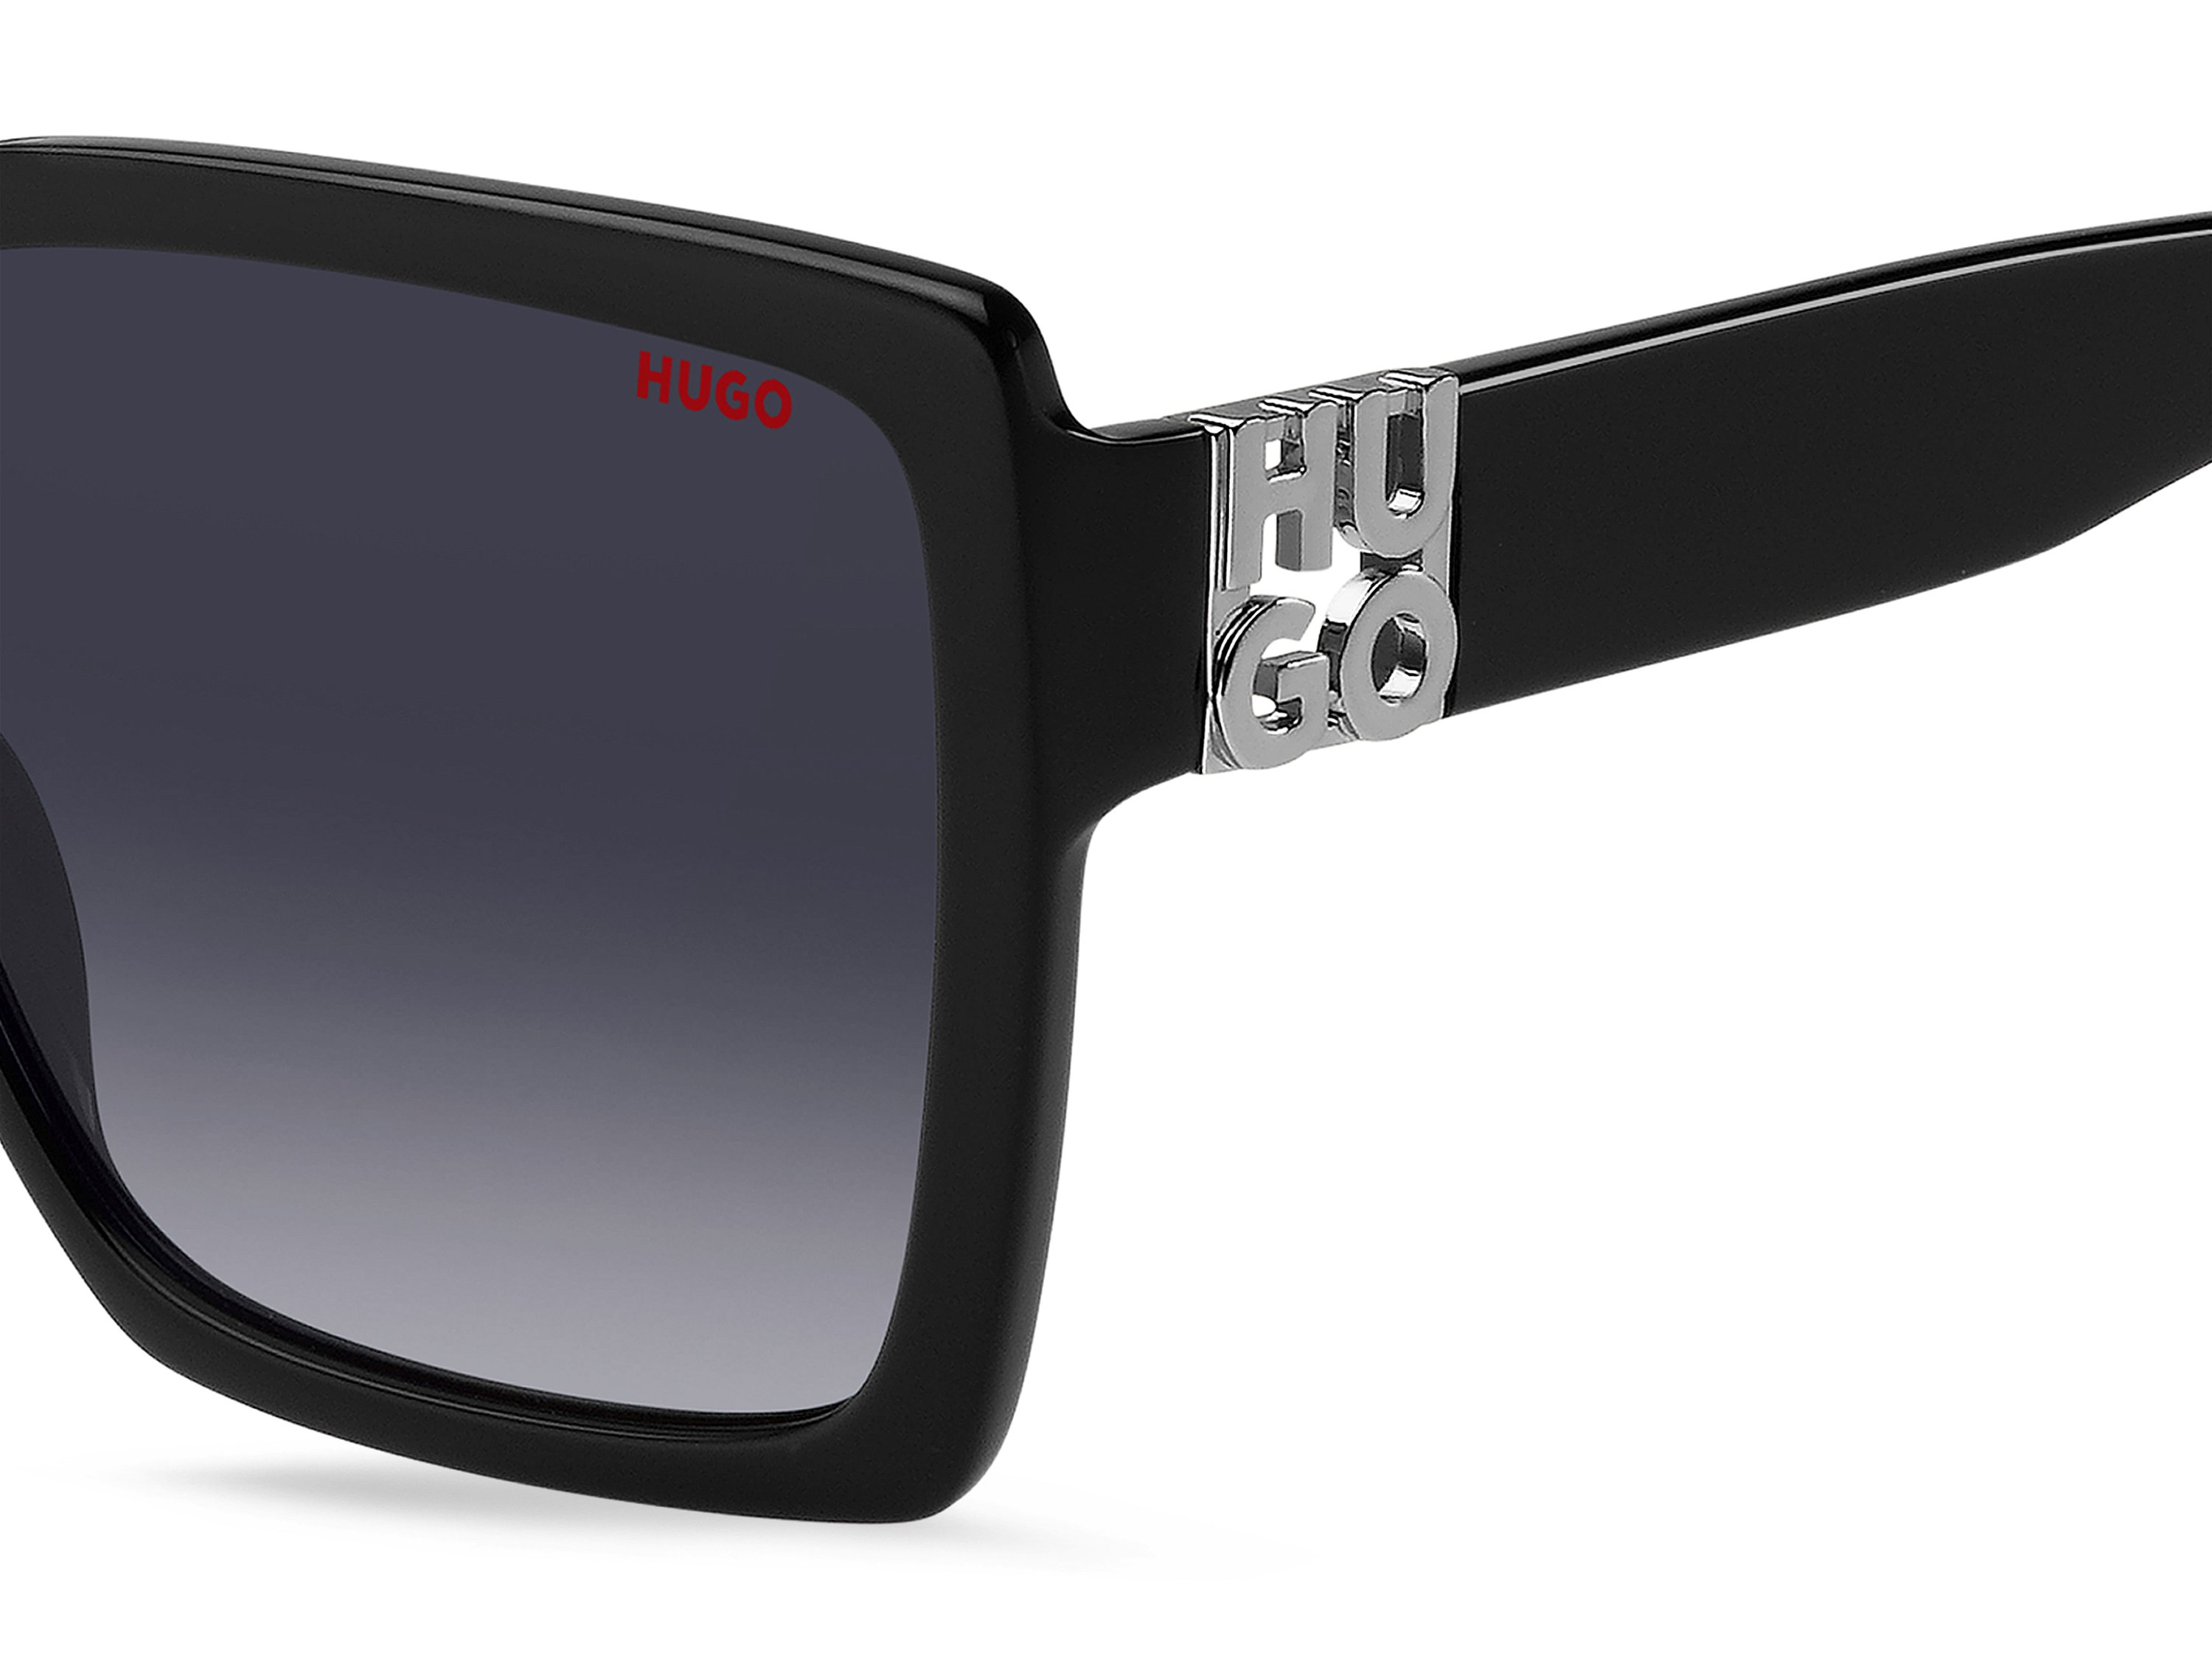 Das Bild zeigt die Sonnenbrille HG1285/S 807 von der Marke Hugo in schwarz.